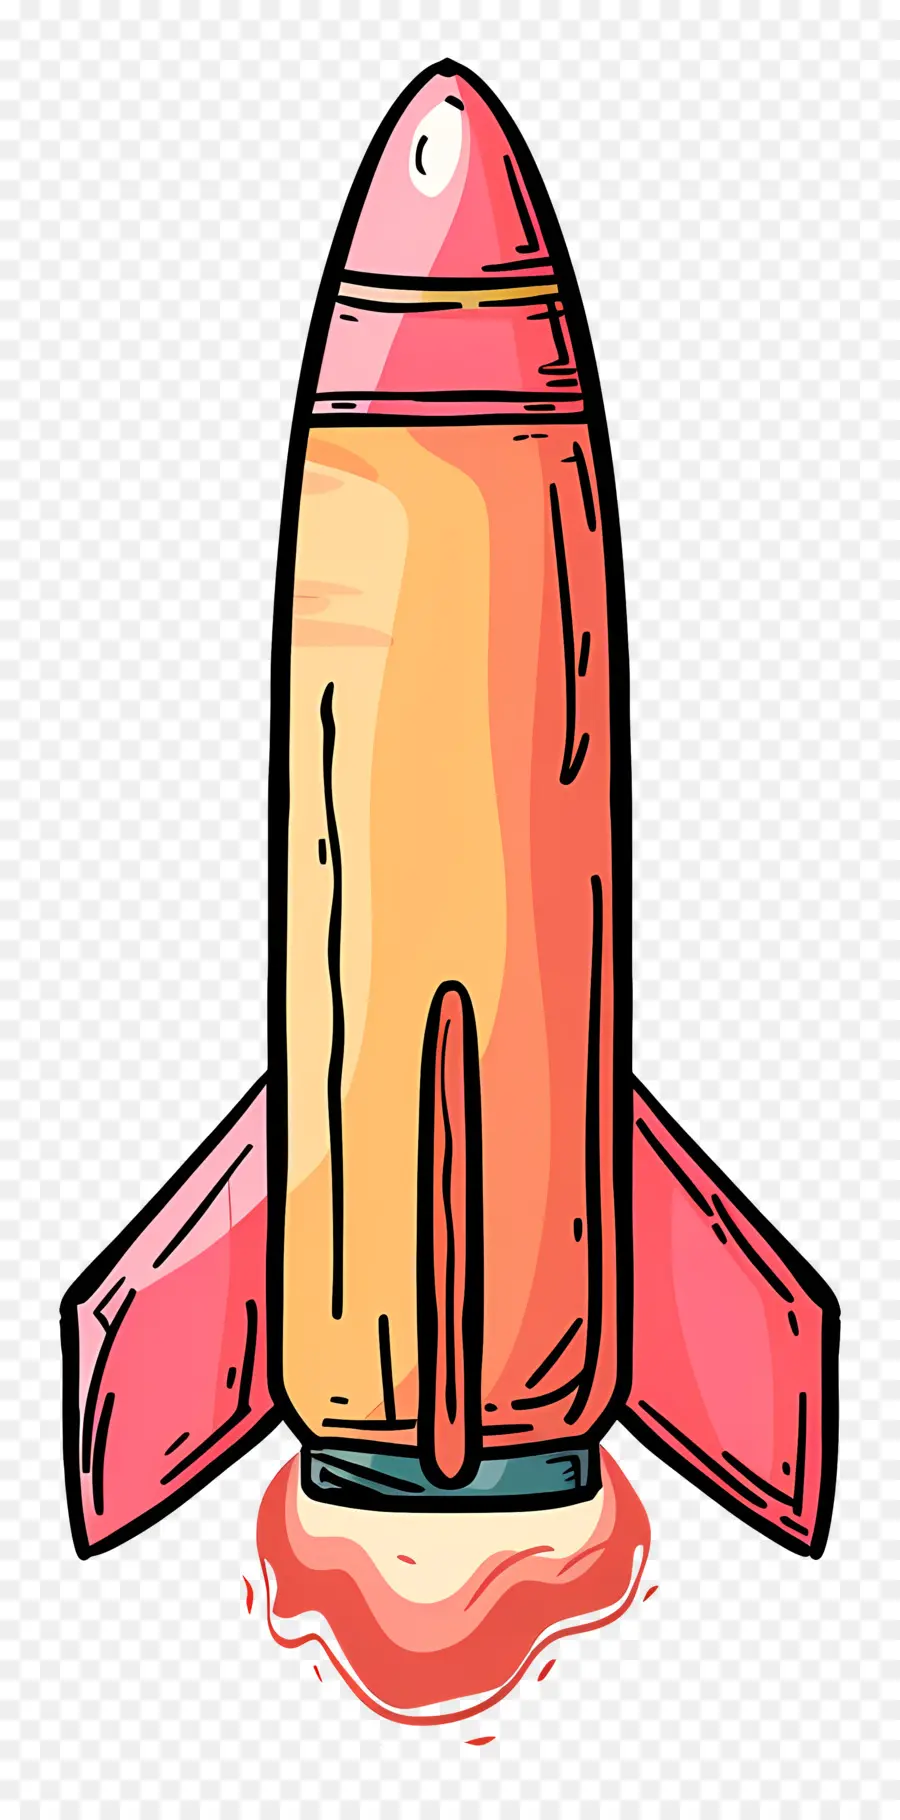 trái cam - Tên lửa màu cam thực tế trôi nổi giữa không trung